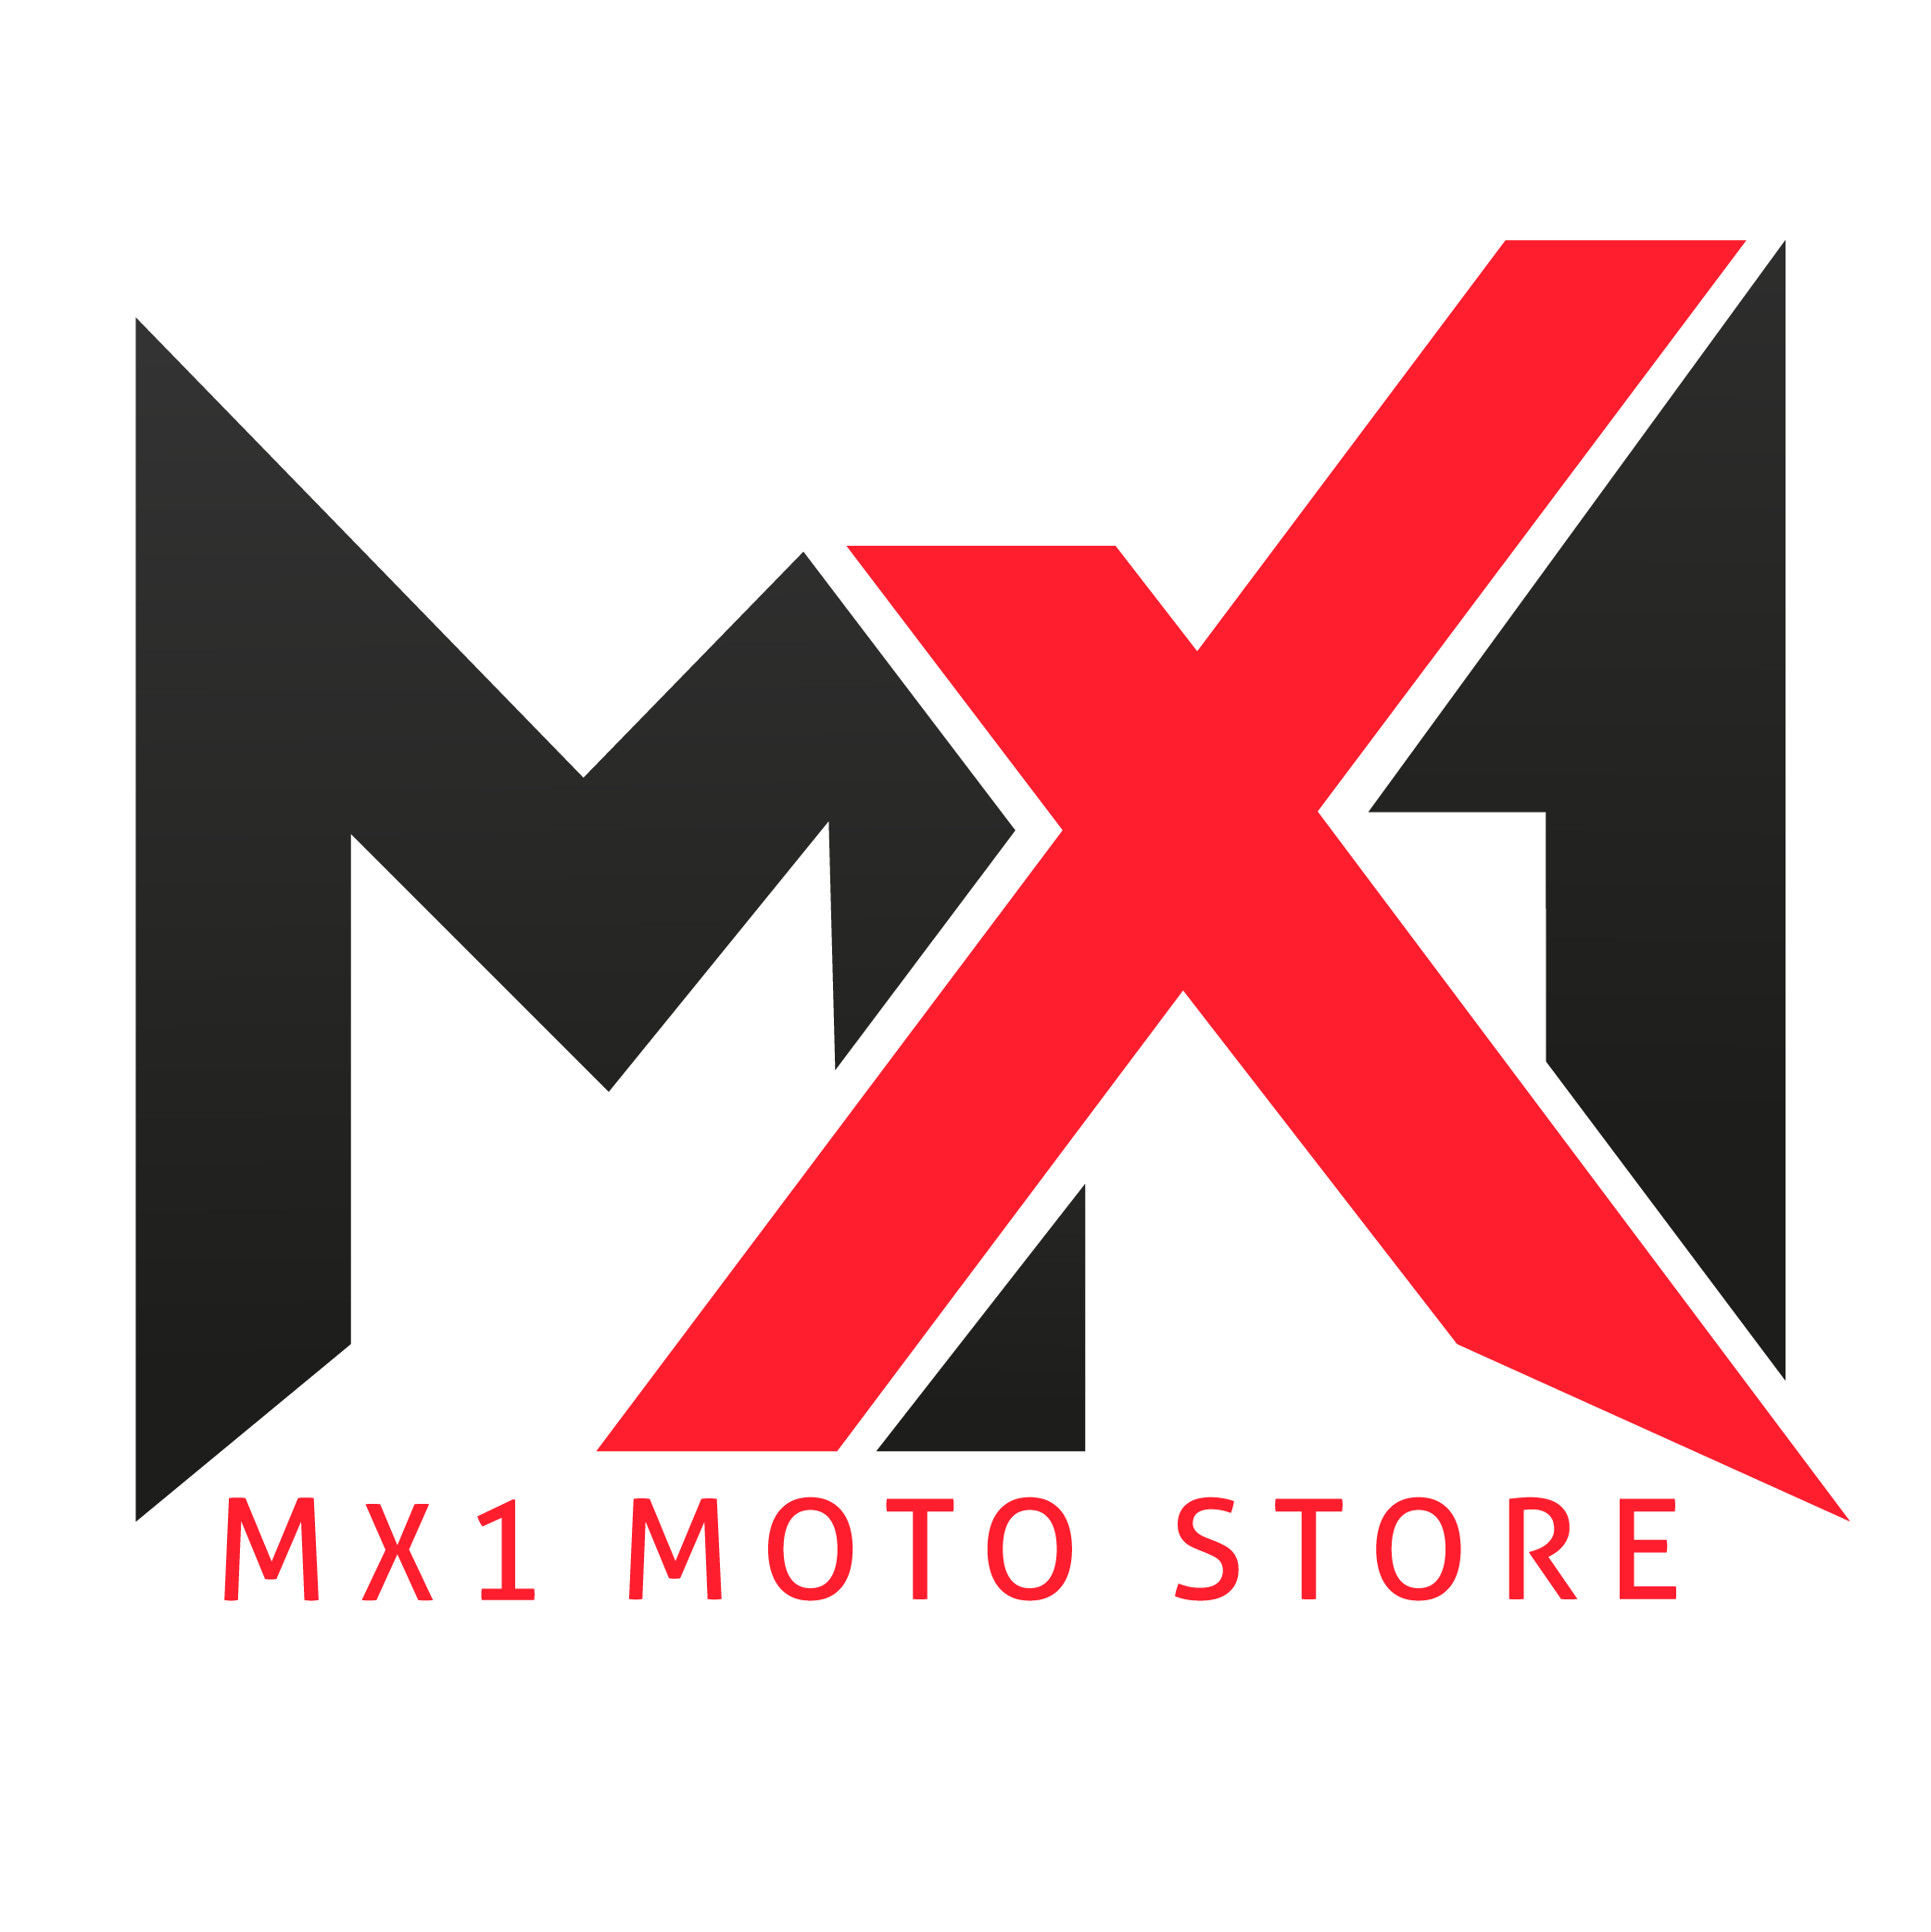 MX1 MOTO STORE